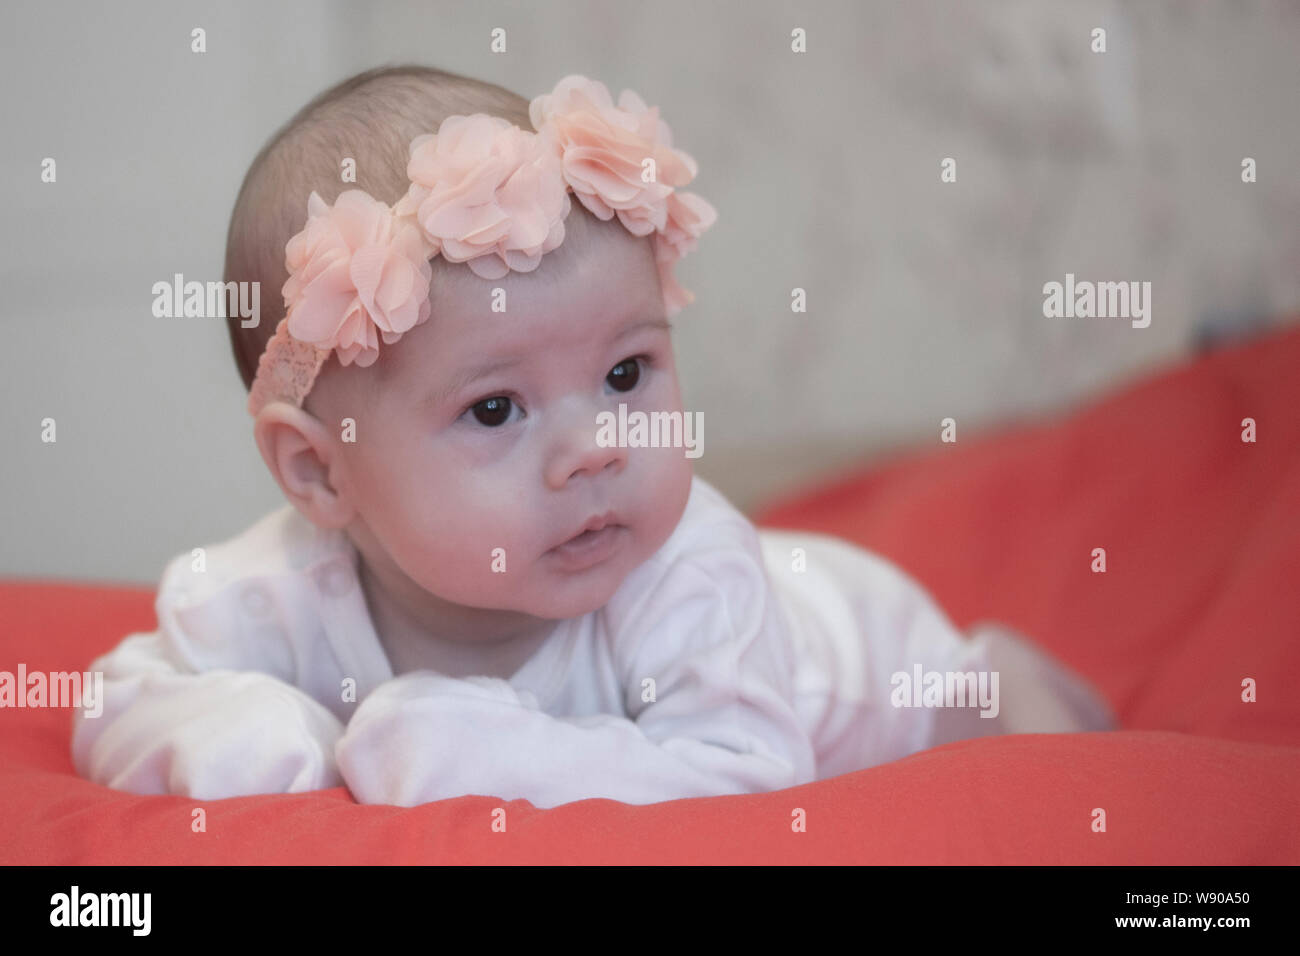 Bebe fille 2 mois Banque de photographies et d'images à haute résolution -  Alamy